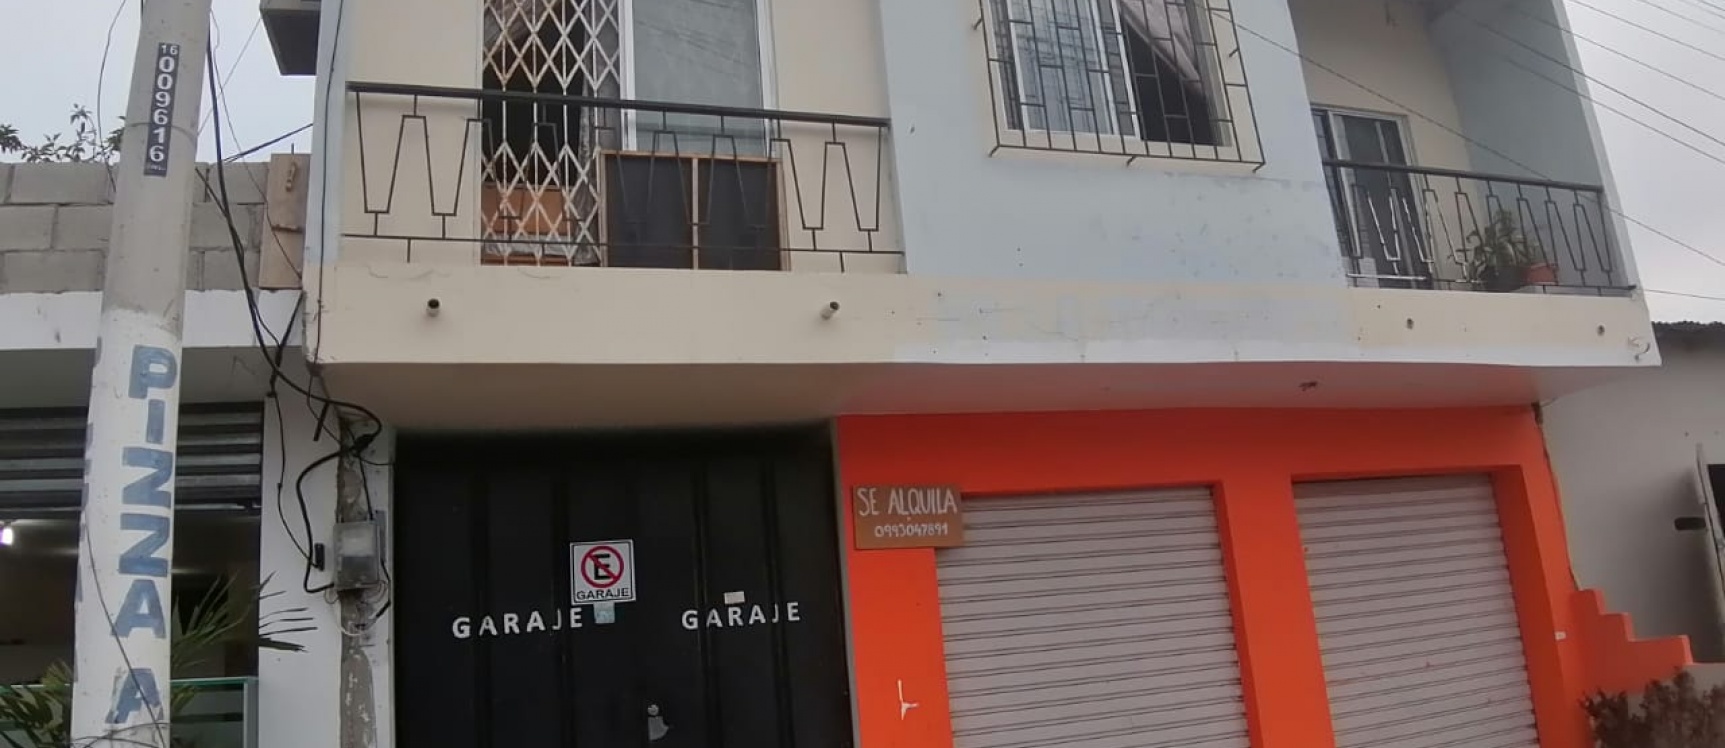 GeoBienes - Venta de casa en Salinas, barrio San Lorenzo, provincia de Santa Elena - Ecuador - Plusvalia Guayaquil Casas de venta y alquiler Inmobiliaria Ecuador